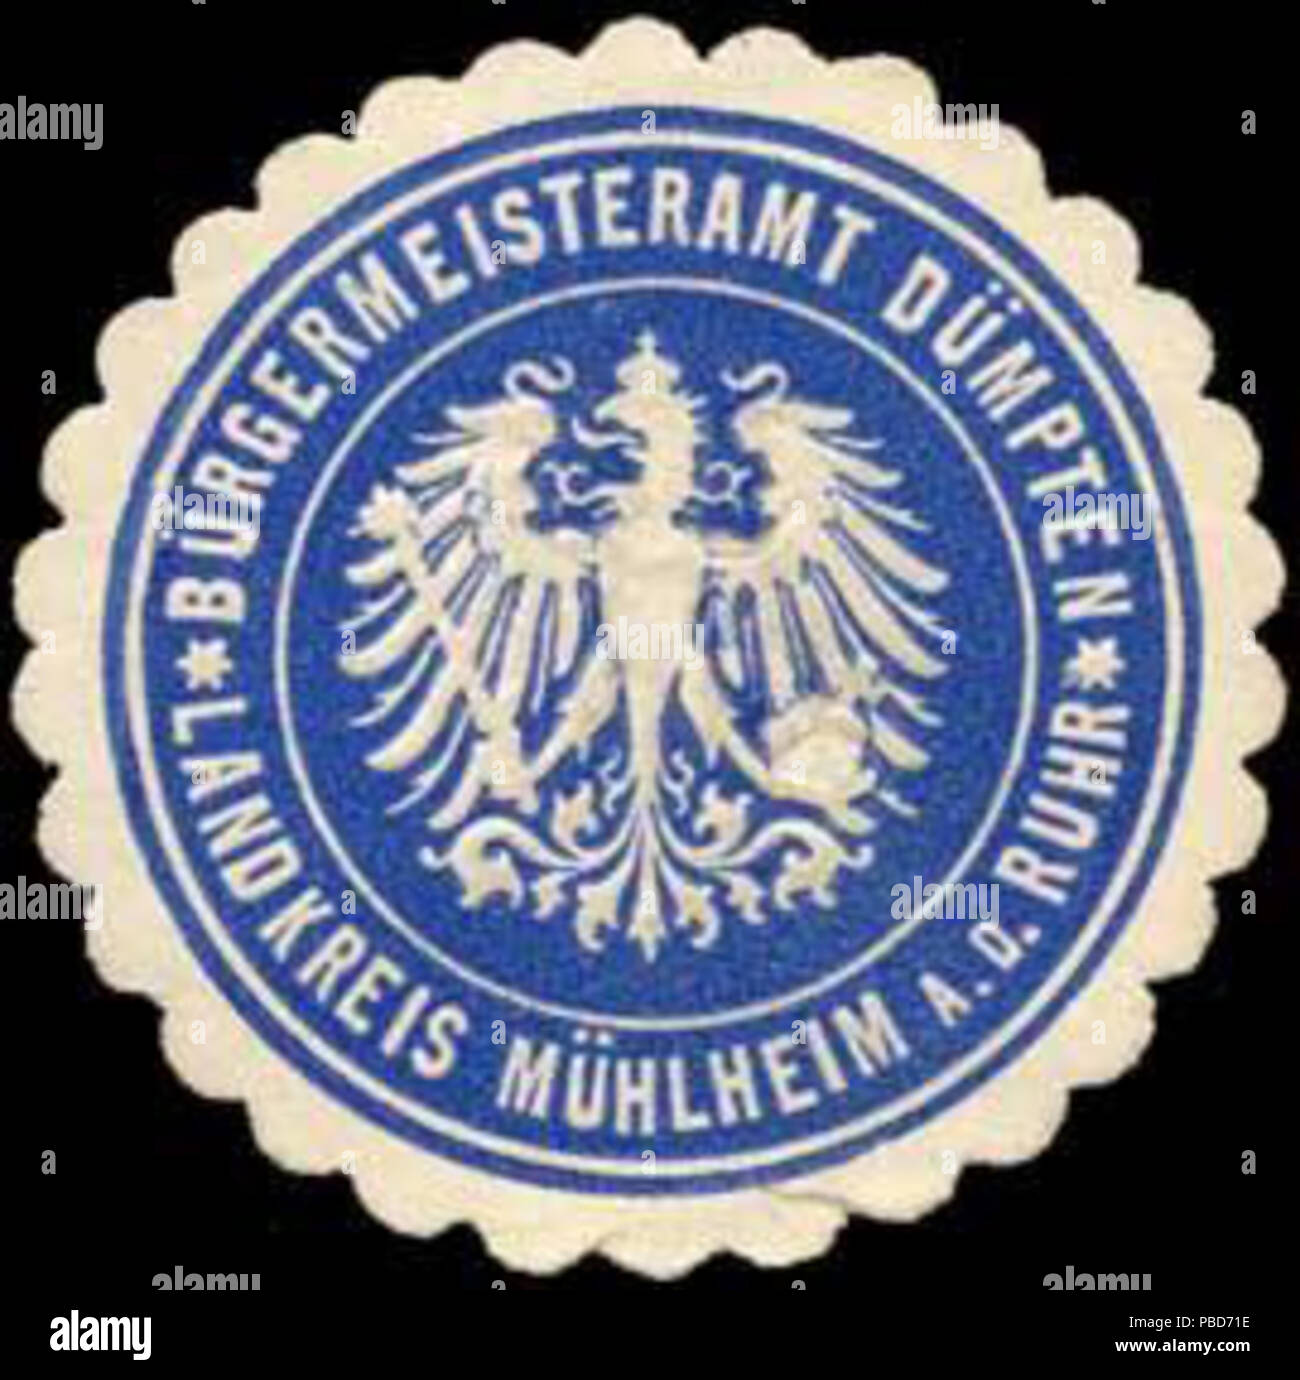 Alte Briefverschlussmarke aus Papier, welche seit ca. 1850 von Behoerden, Anwaelten, Notaren und Firmen zum verschliessen der Post verwendet wurde. 1331 Siegelmarke Bürgermeisteramt Dümpten - Landkreis Mühlheim an der Ruhr W0259893 Foto Stock